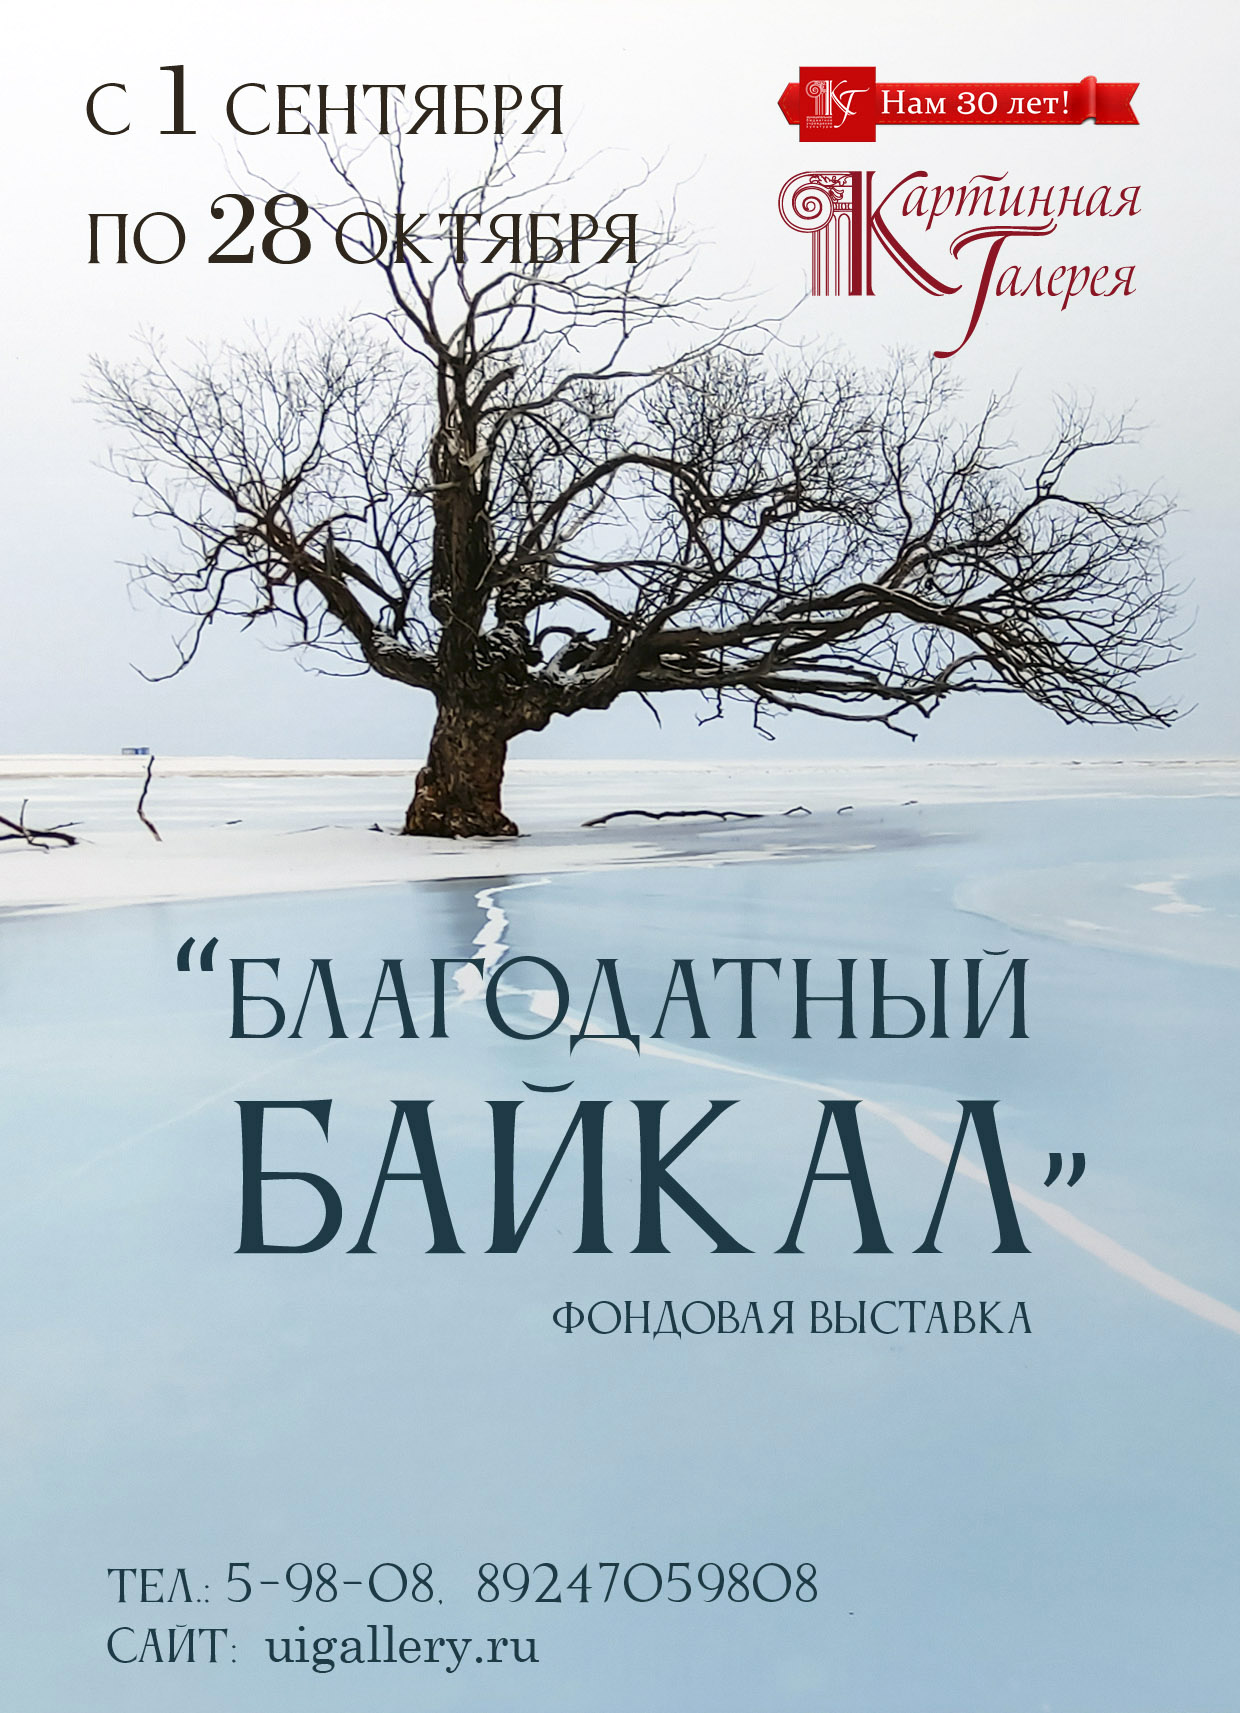 Фондовая выставка "Благодатный Байкал"